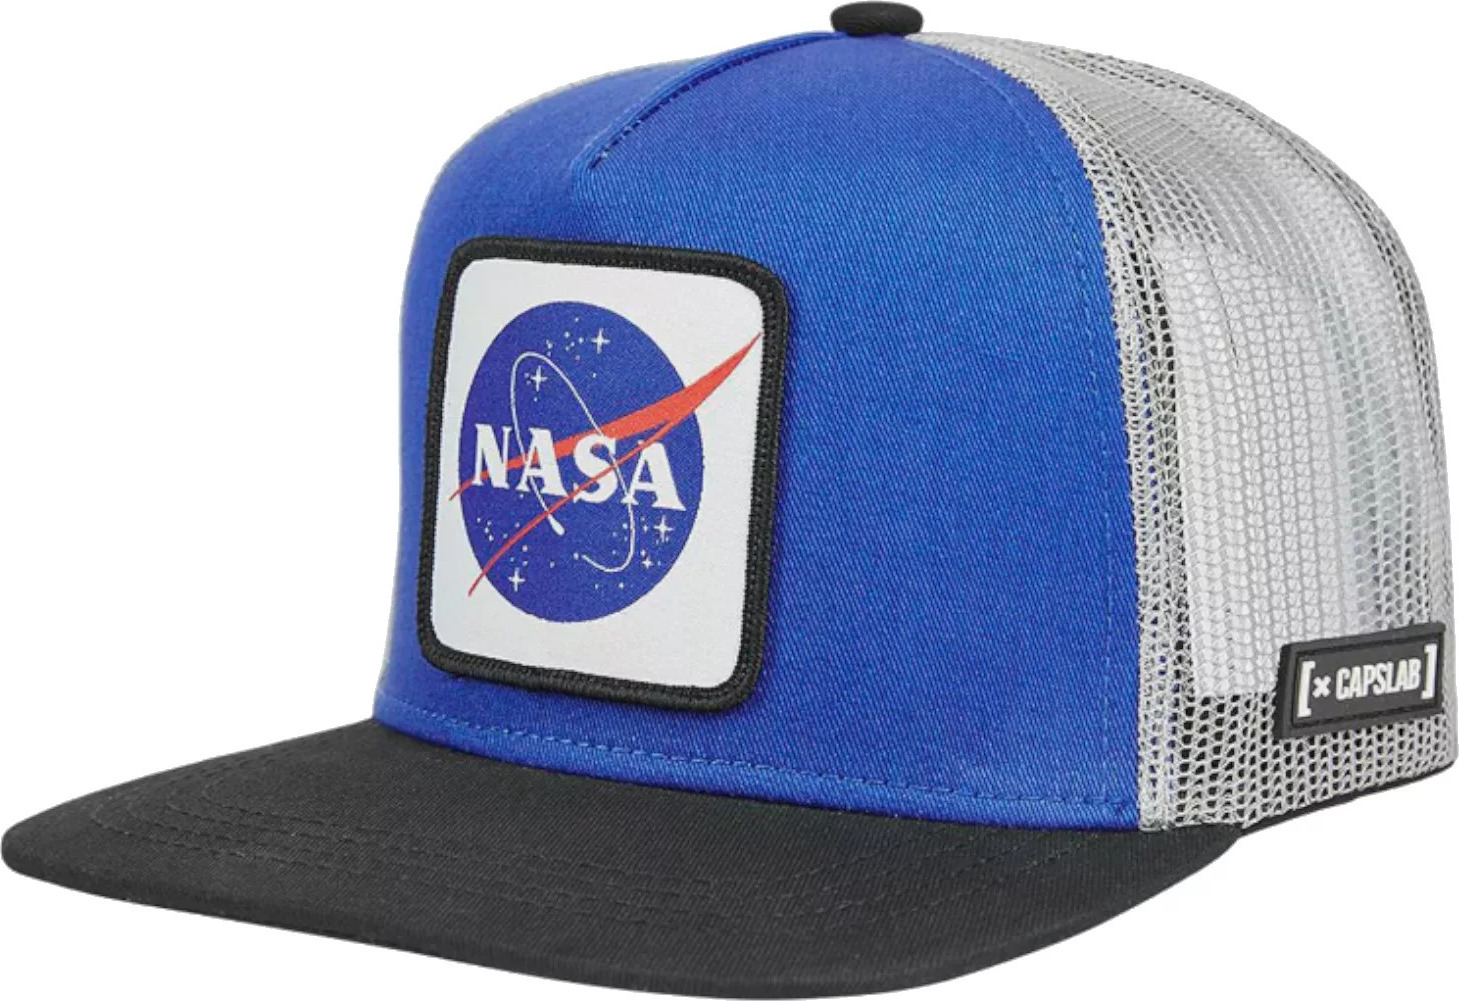 MODRÁ KŠILTOVKA CAPSLAB SPACE MISSION NASA SNAPBACK CAP CL-NASA-1-US1 Velikost: ONE SIZE